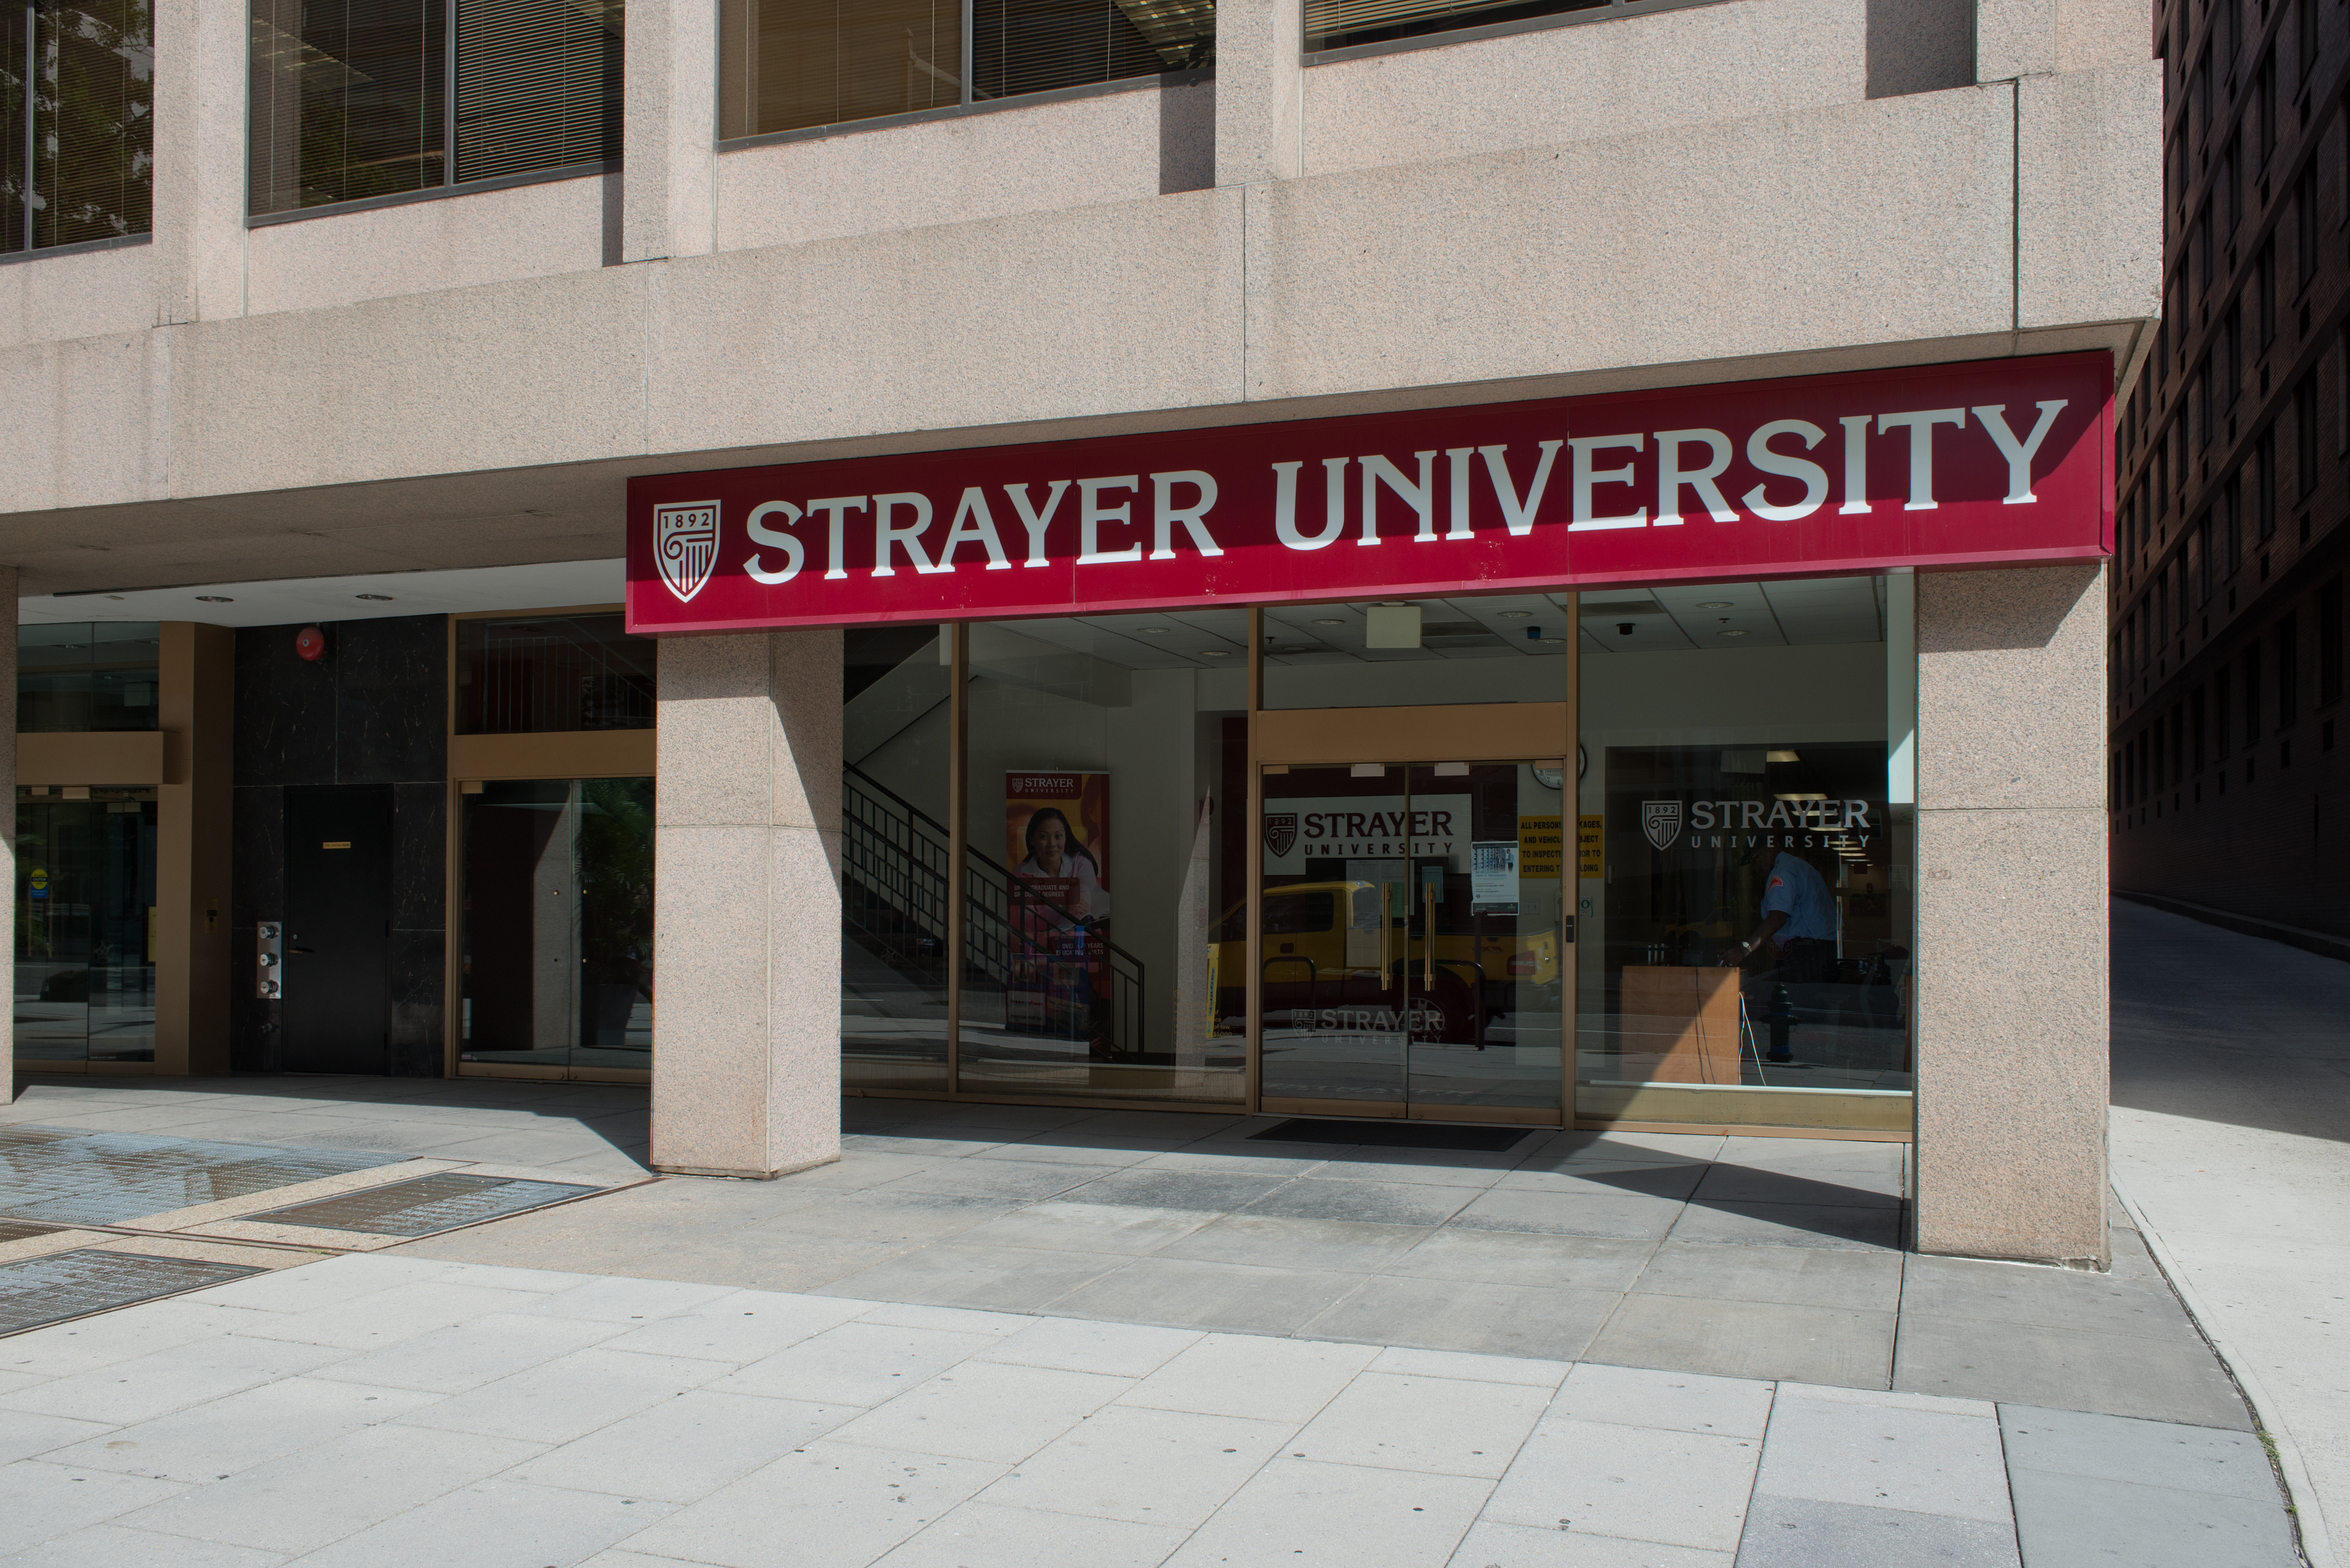 Strayer University Photo